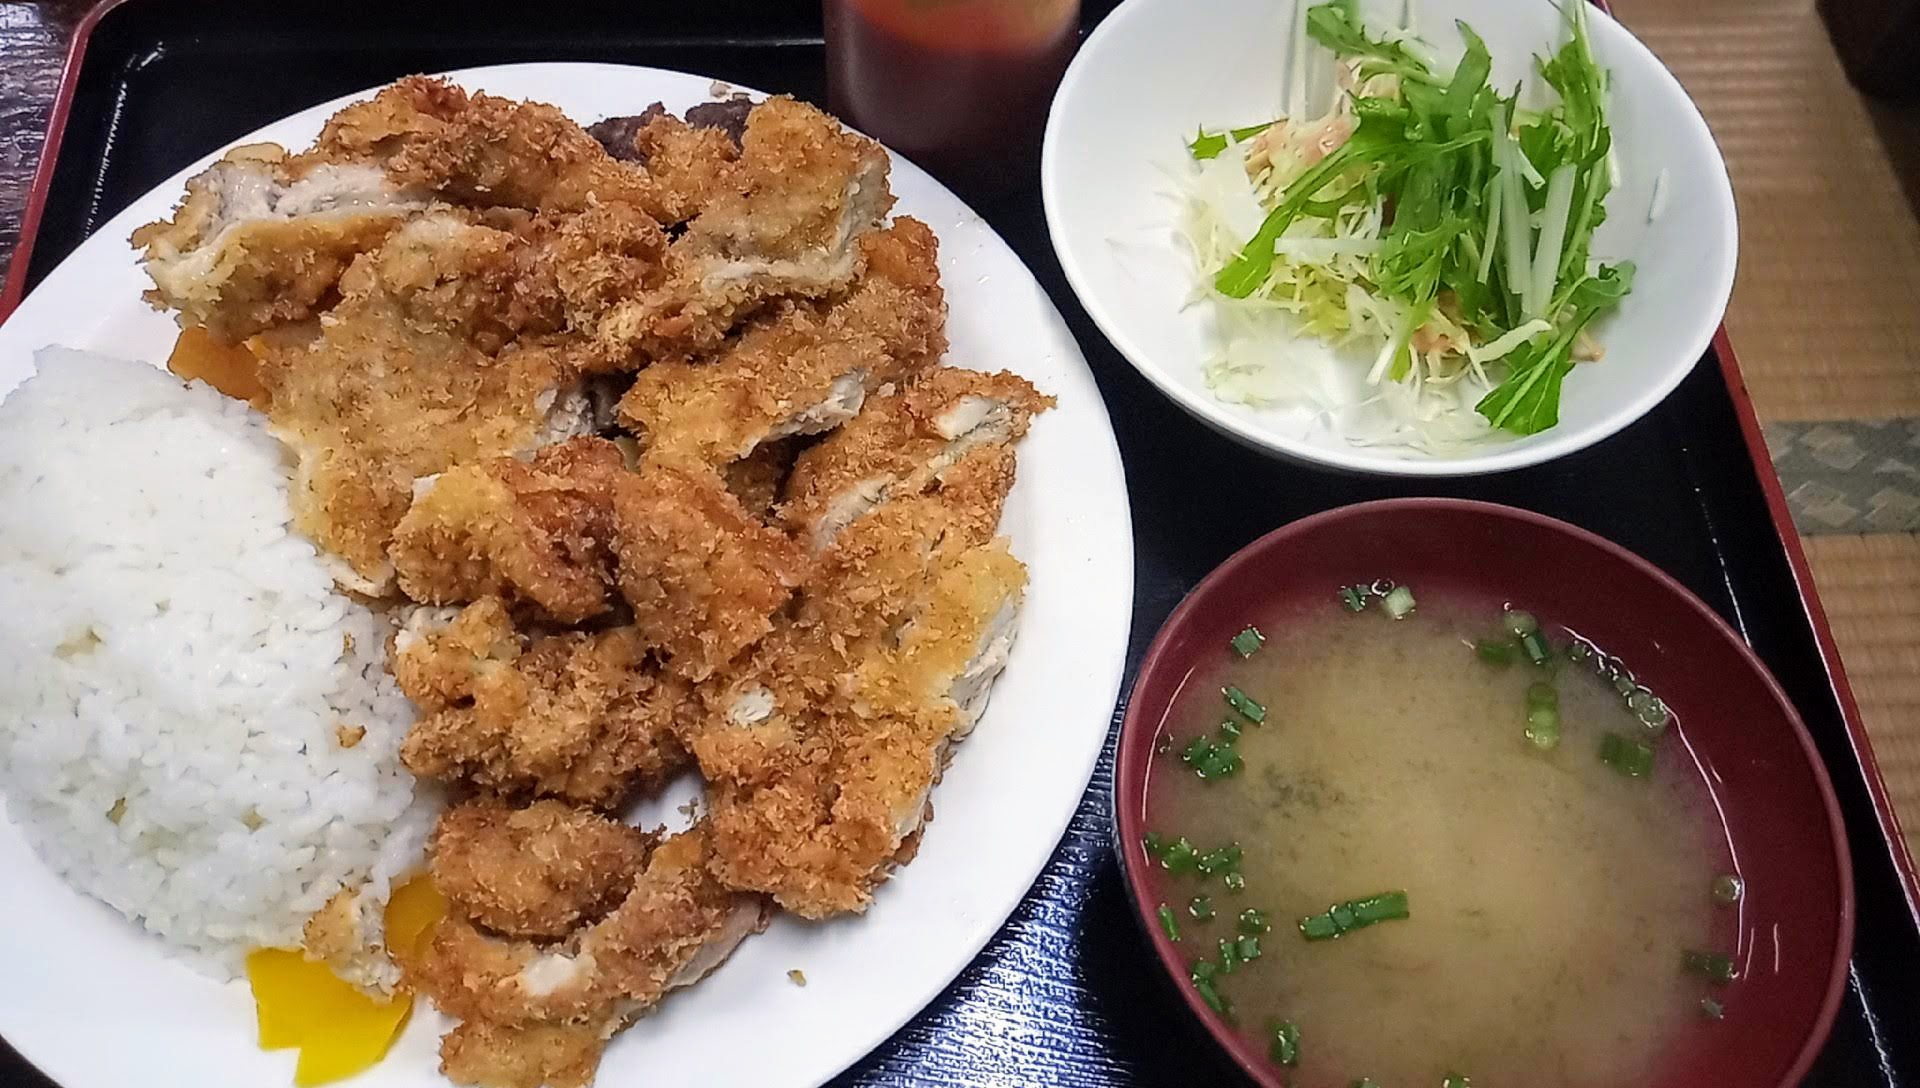 Chicken katsu set meal